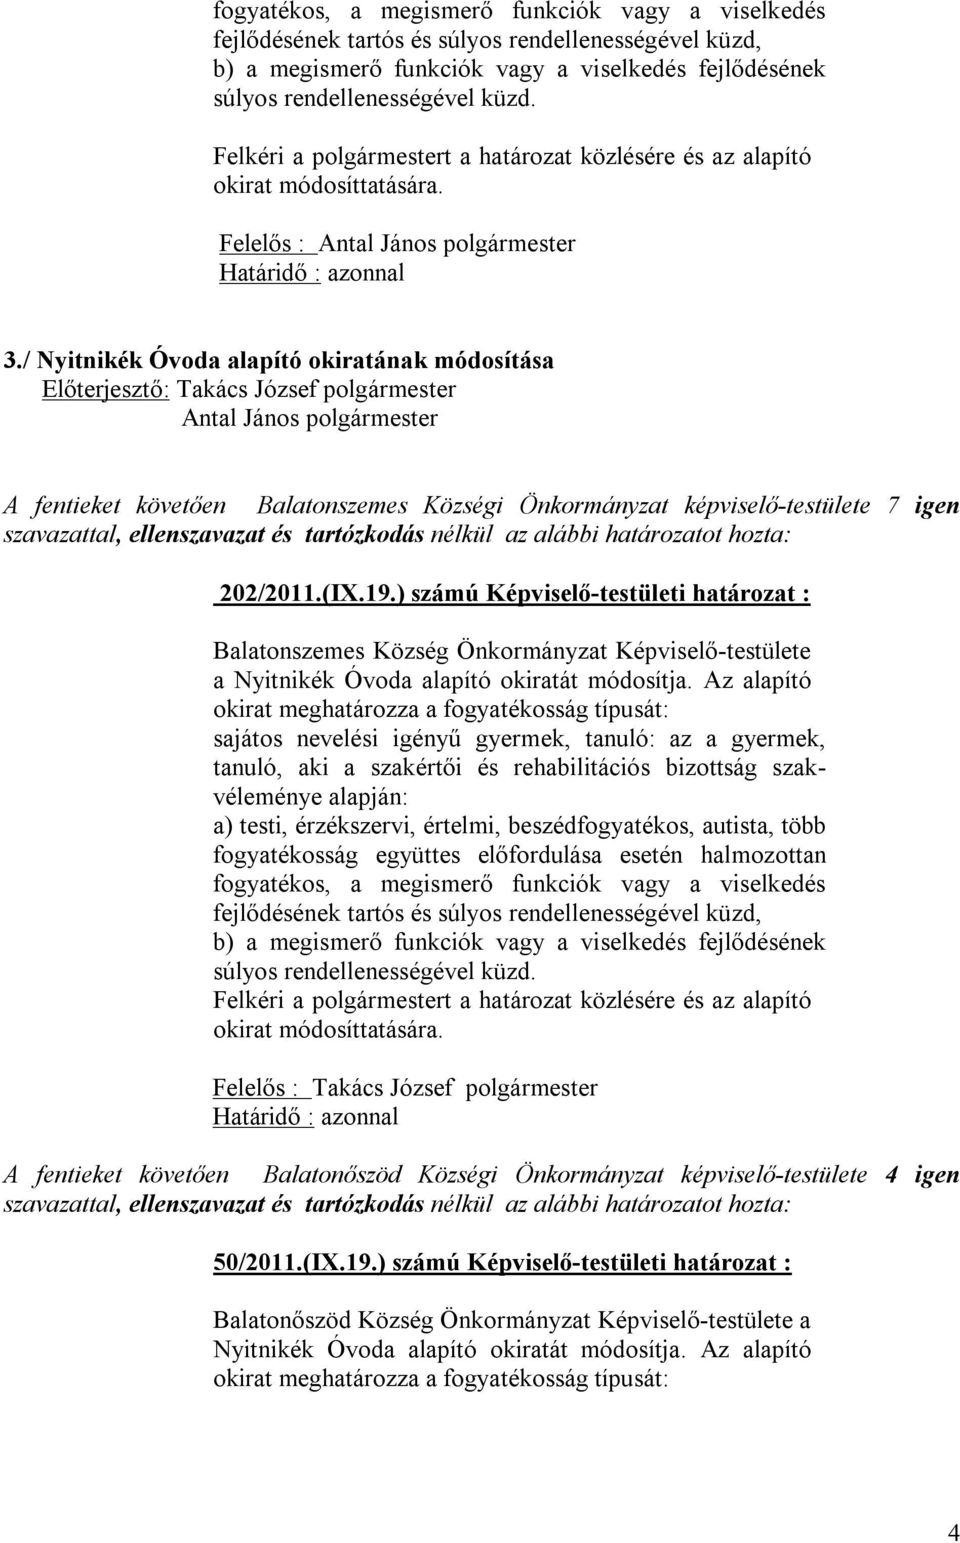 módosítja. Az alapító okirat meghatározza a fogyatékosság típusát: Felelős : Takács József polgármester 50/2011.(IX.19.